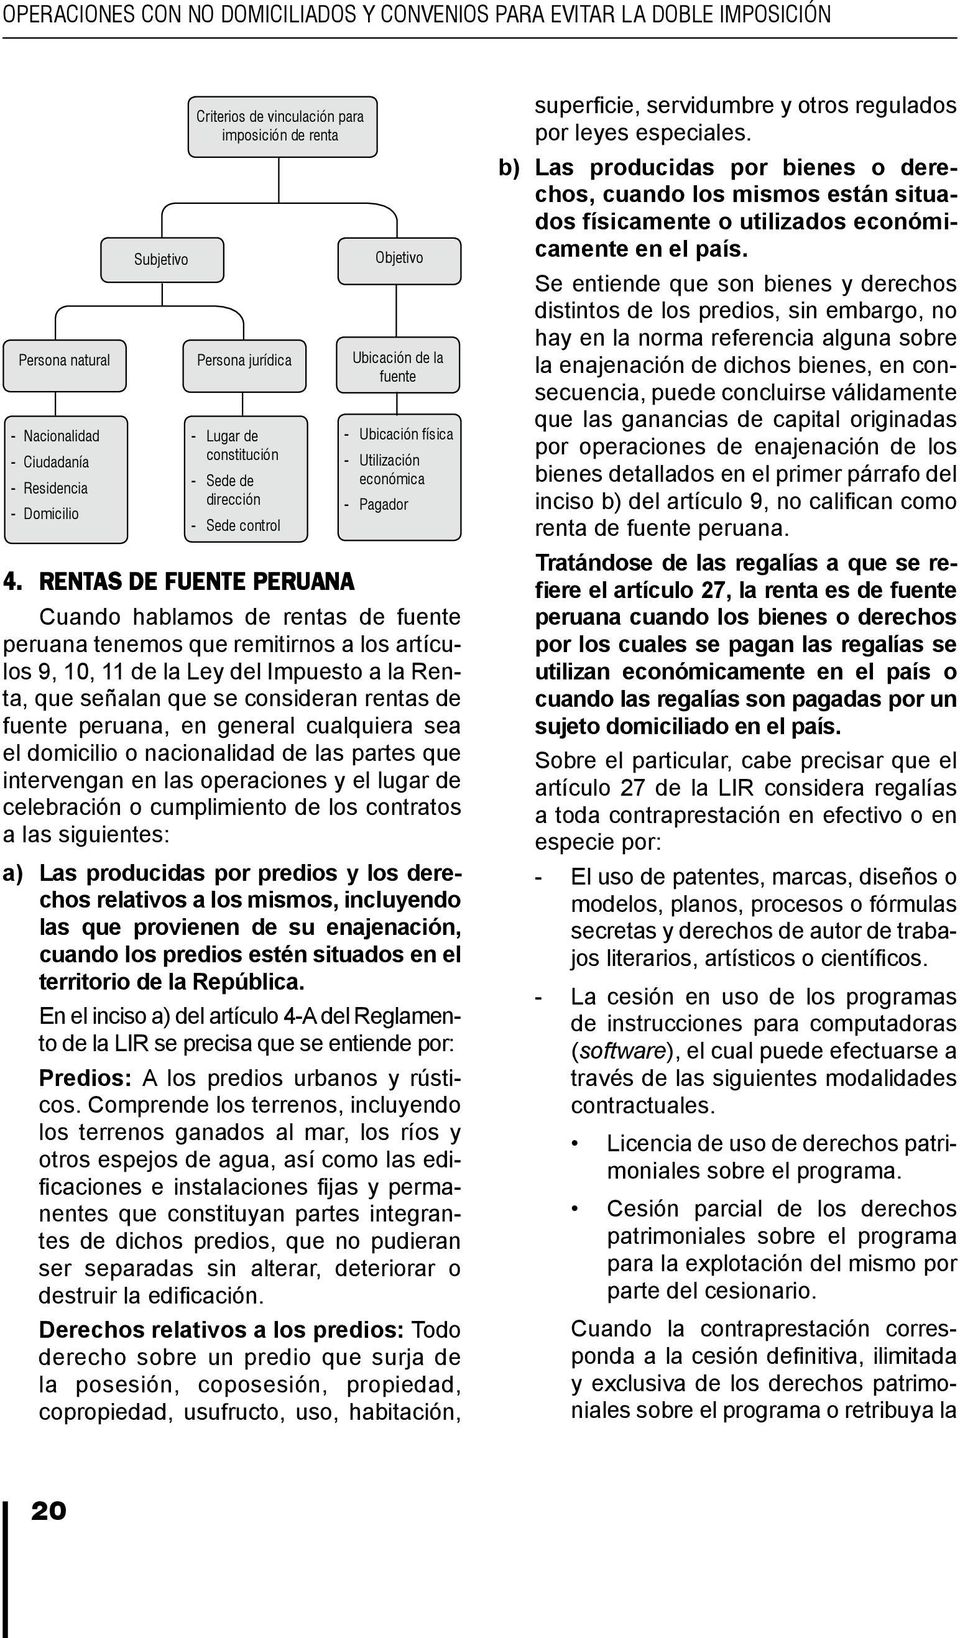 control - Ubicación física - Utilización económica - Pagador Cuando hablamos de rentas de fuente peruana tenemos que remitirnos a los artículos 9, 10, 11 de la Ley del Impuesto a la Renta, que